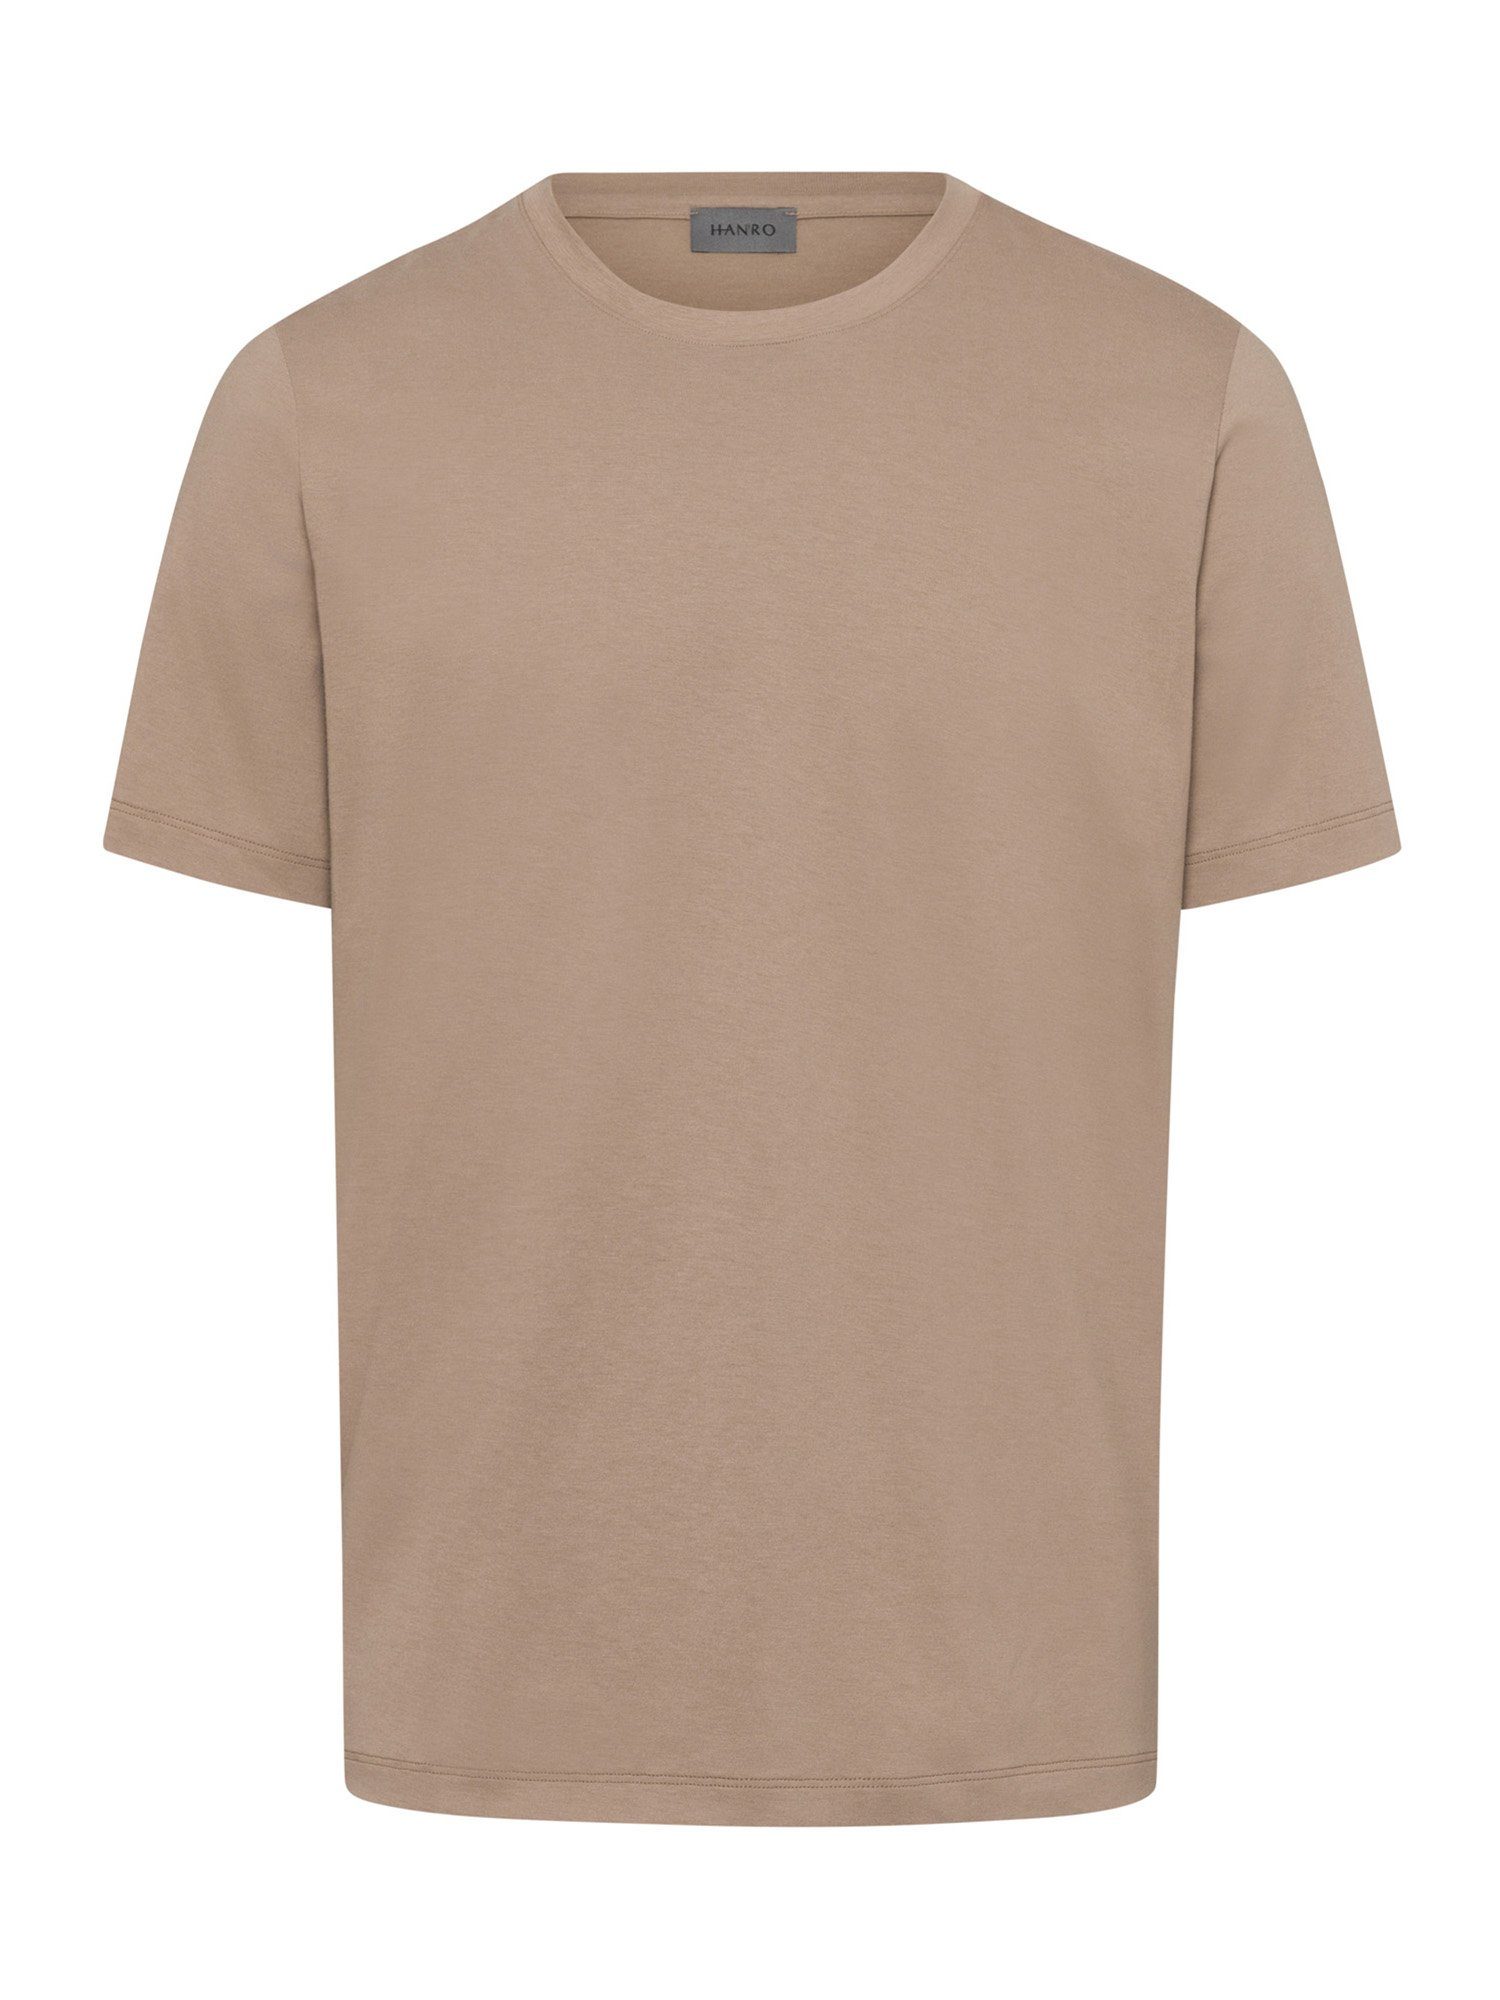 Hanro T-Shirt Living Shirts ash